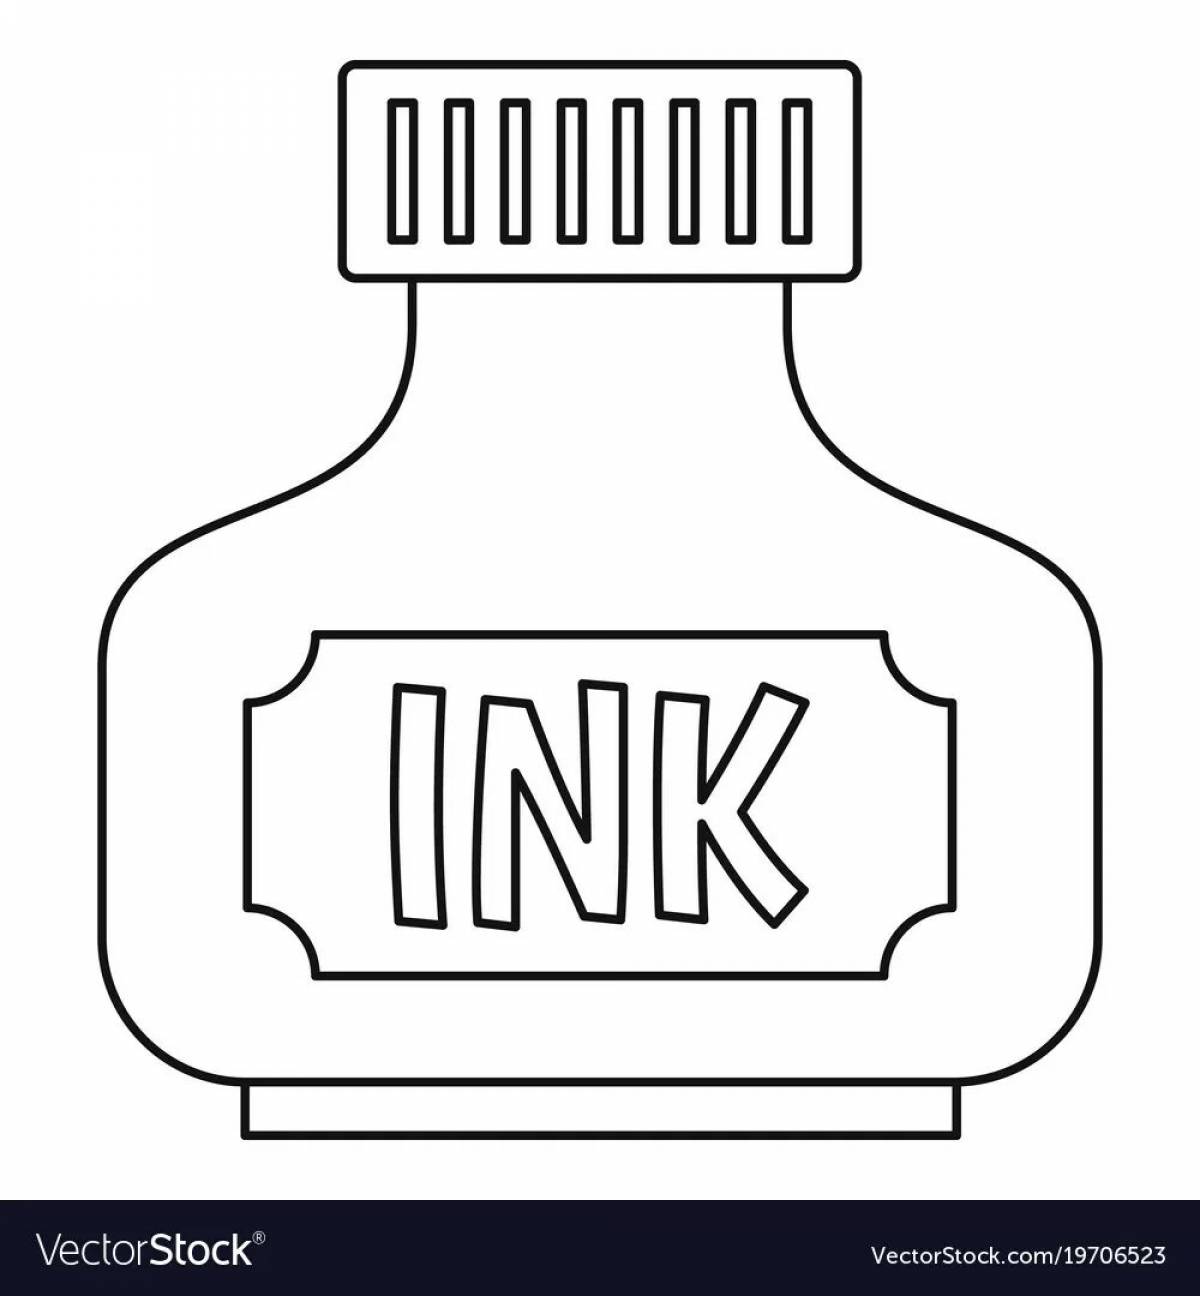 Ink #14